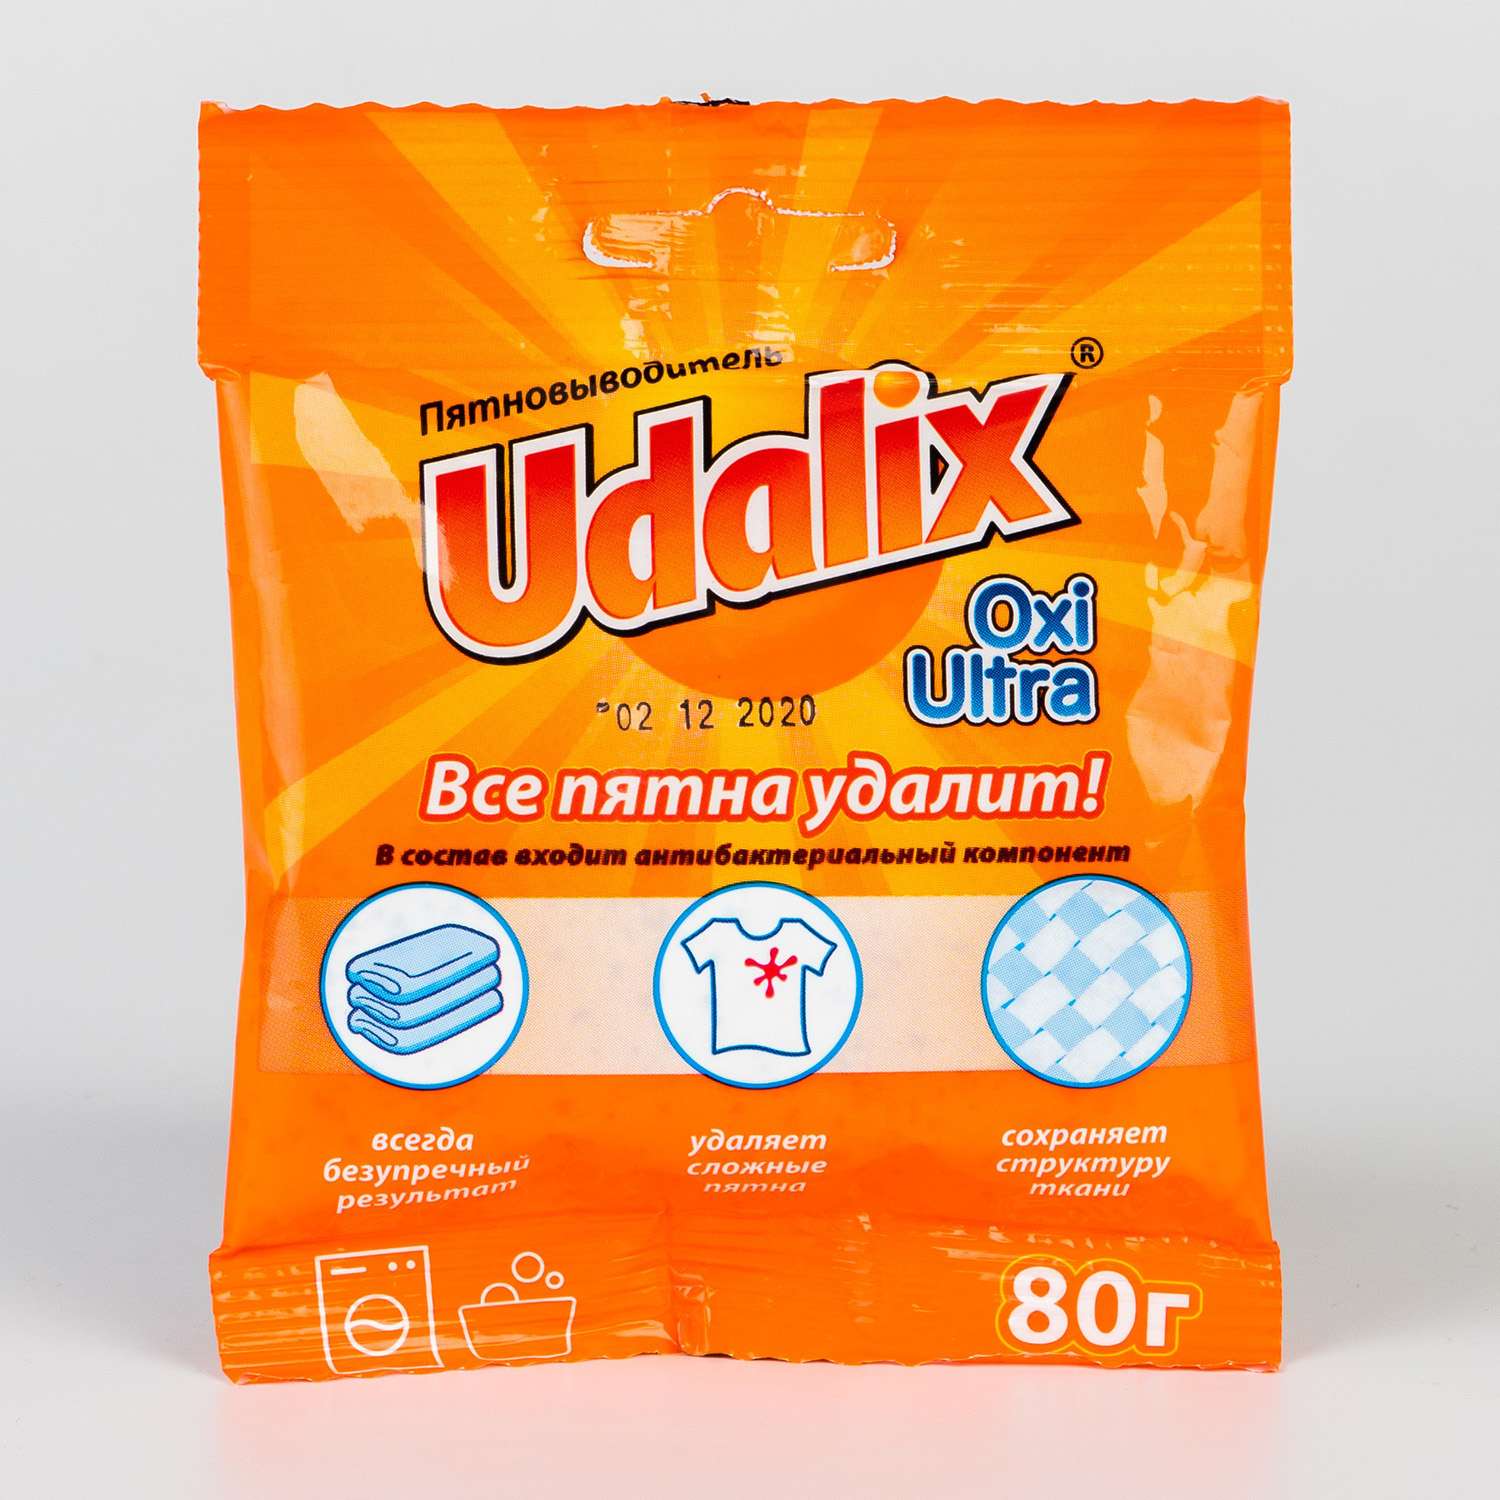 Пятновыводитель Udalix Oxi Ultra 80 г - фото 1